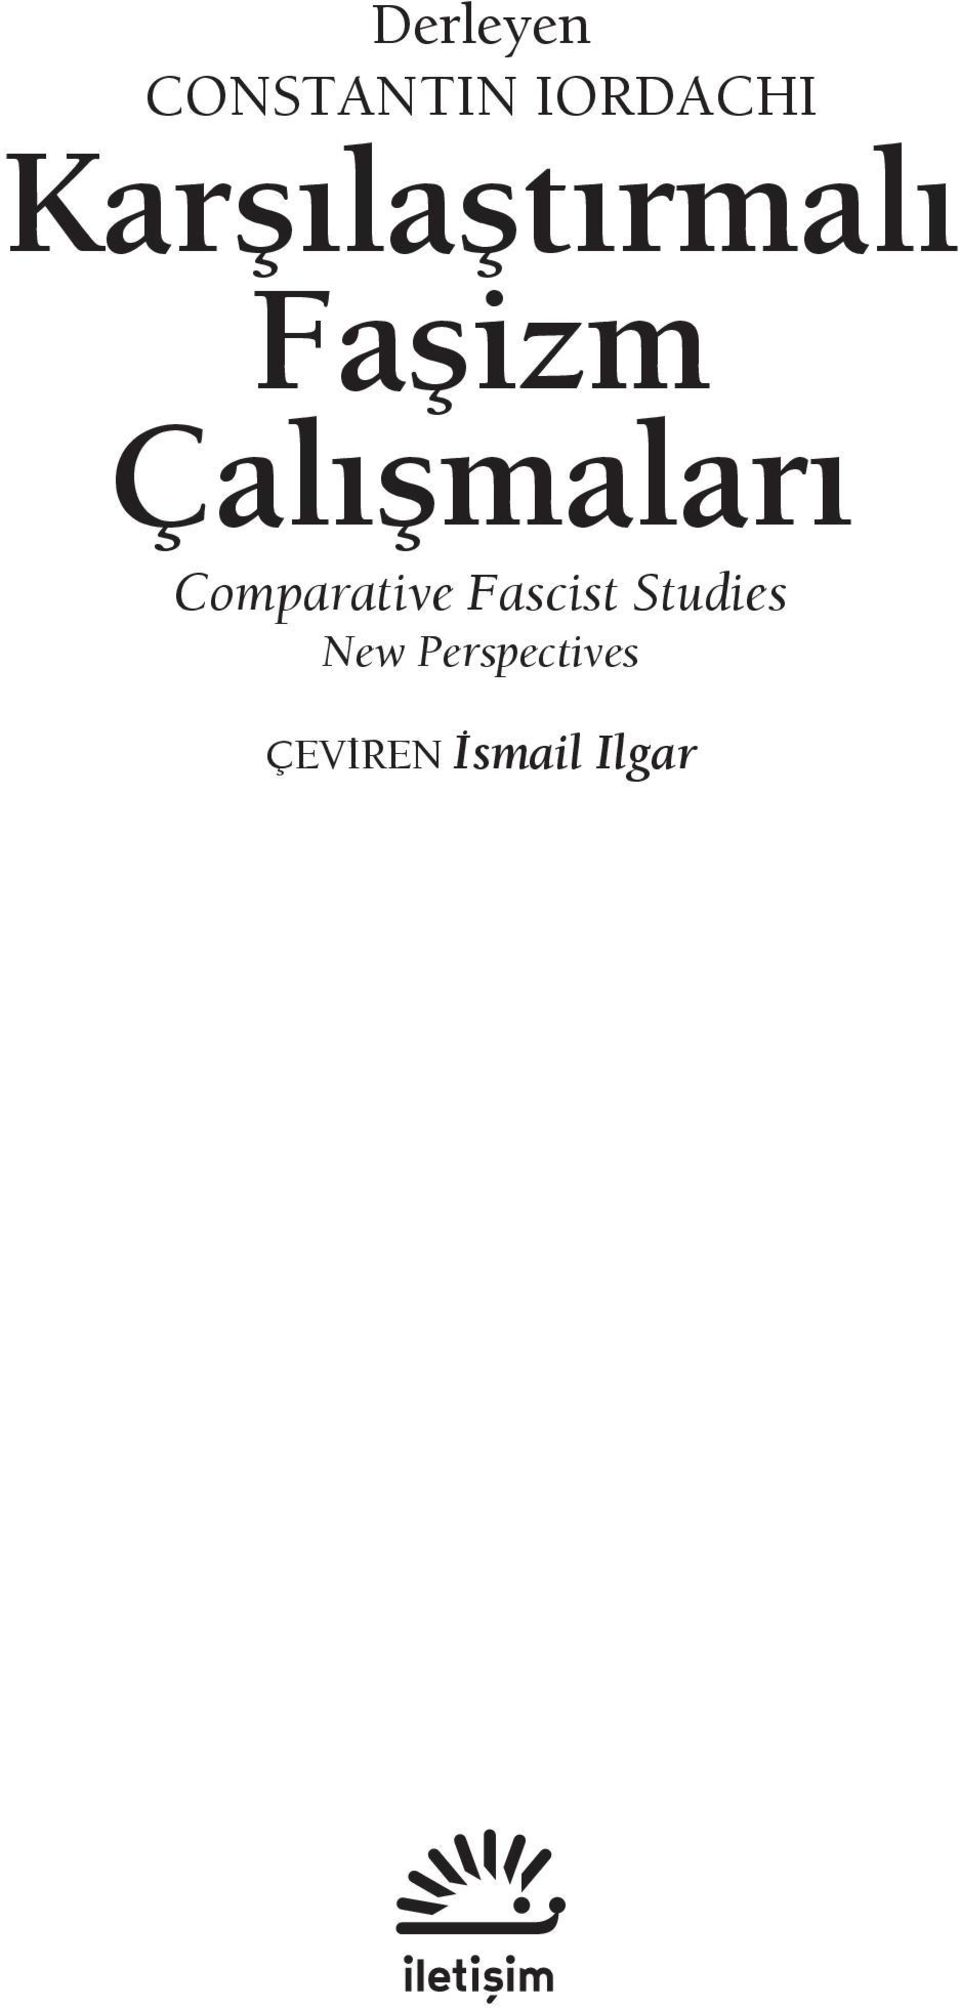 Çalışmaları Comparative Fascist